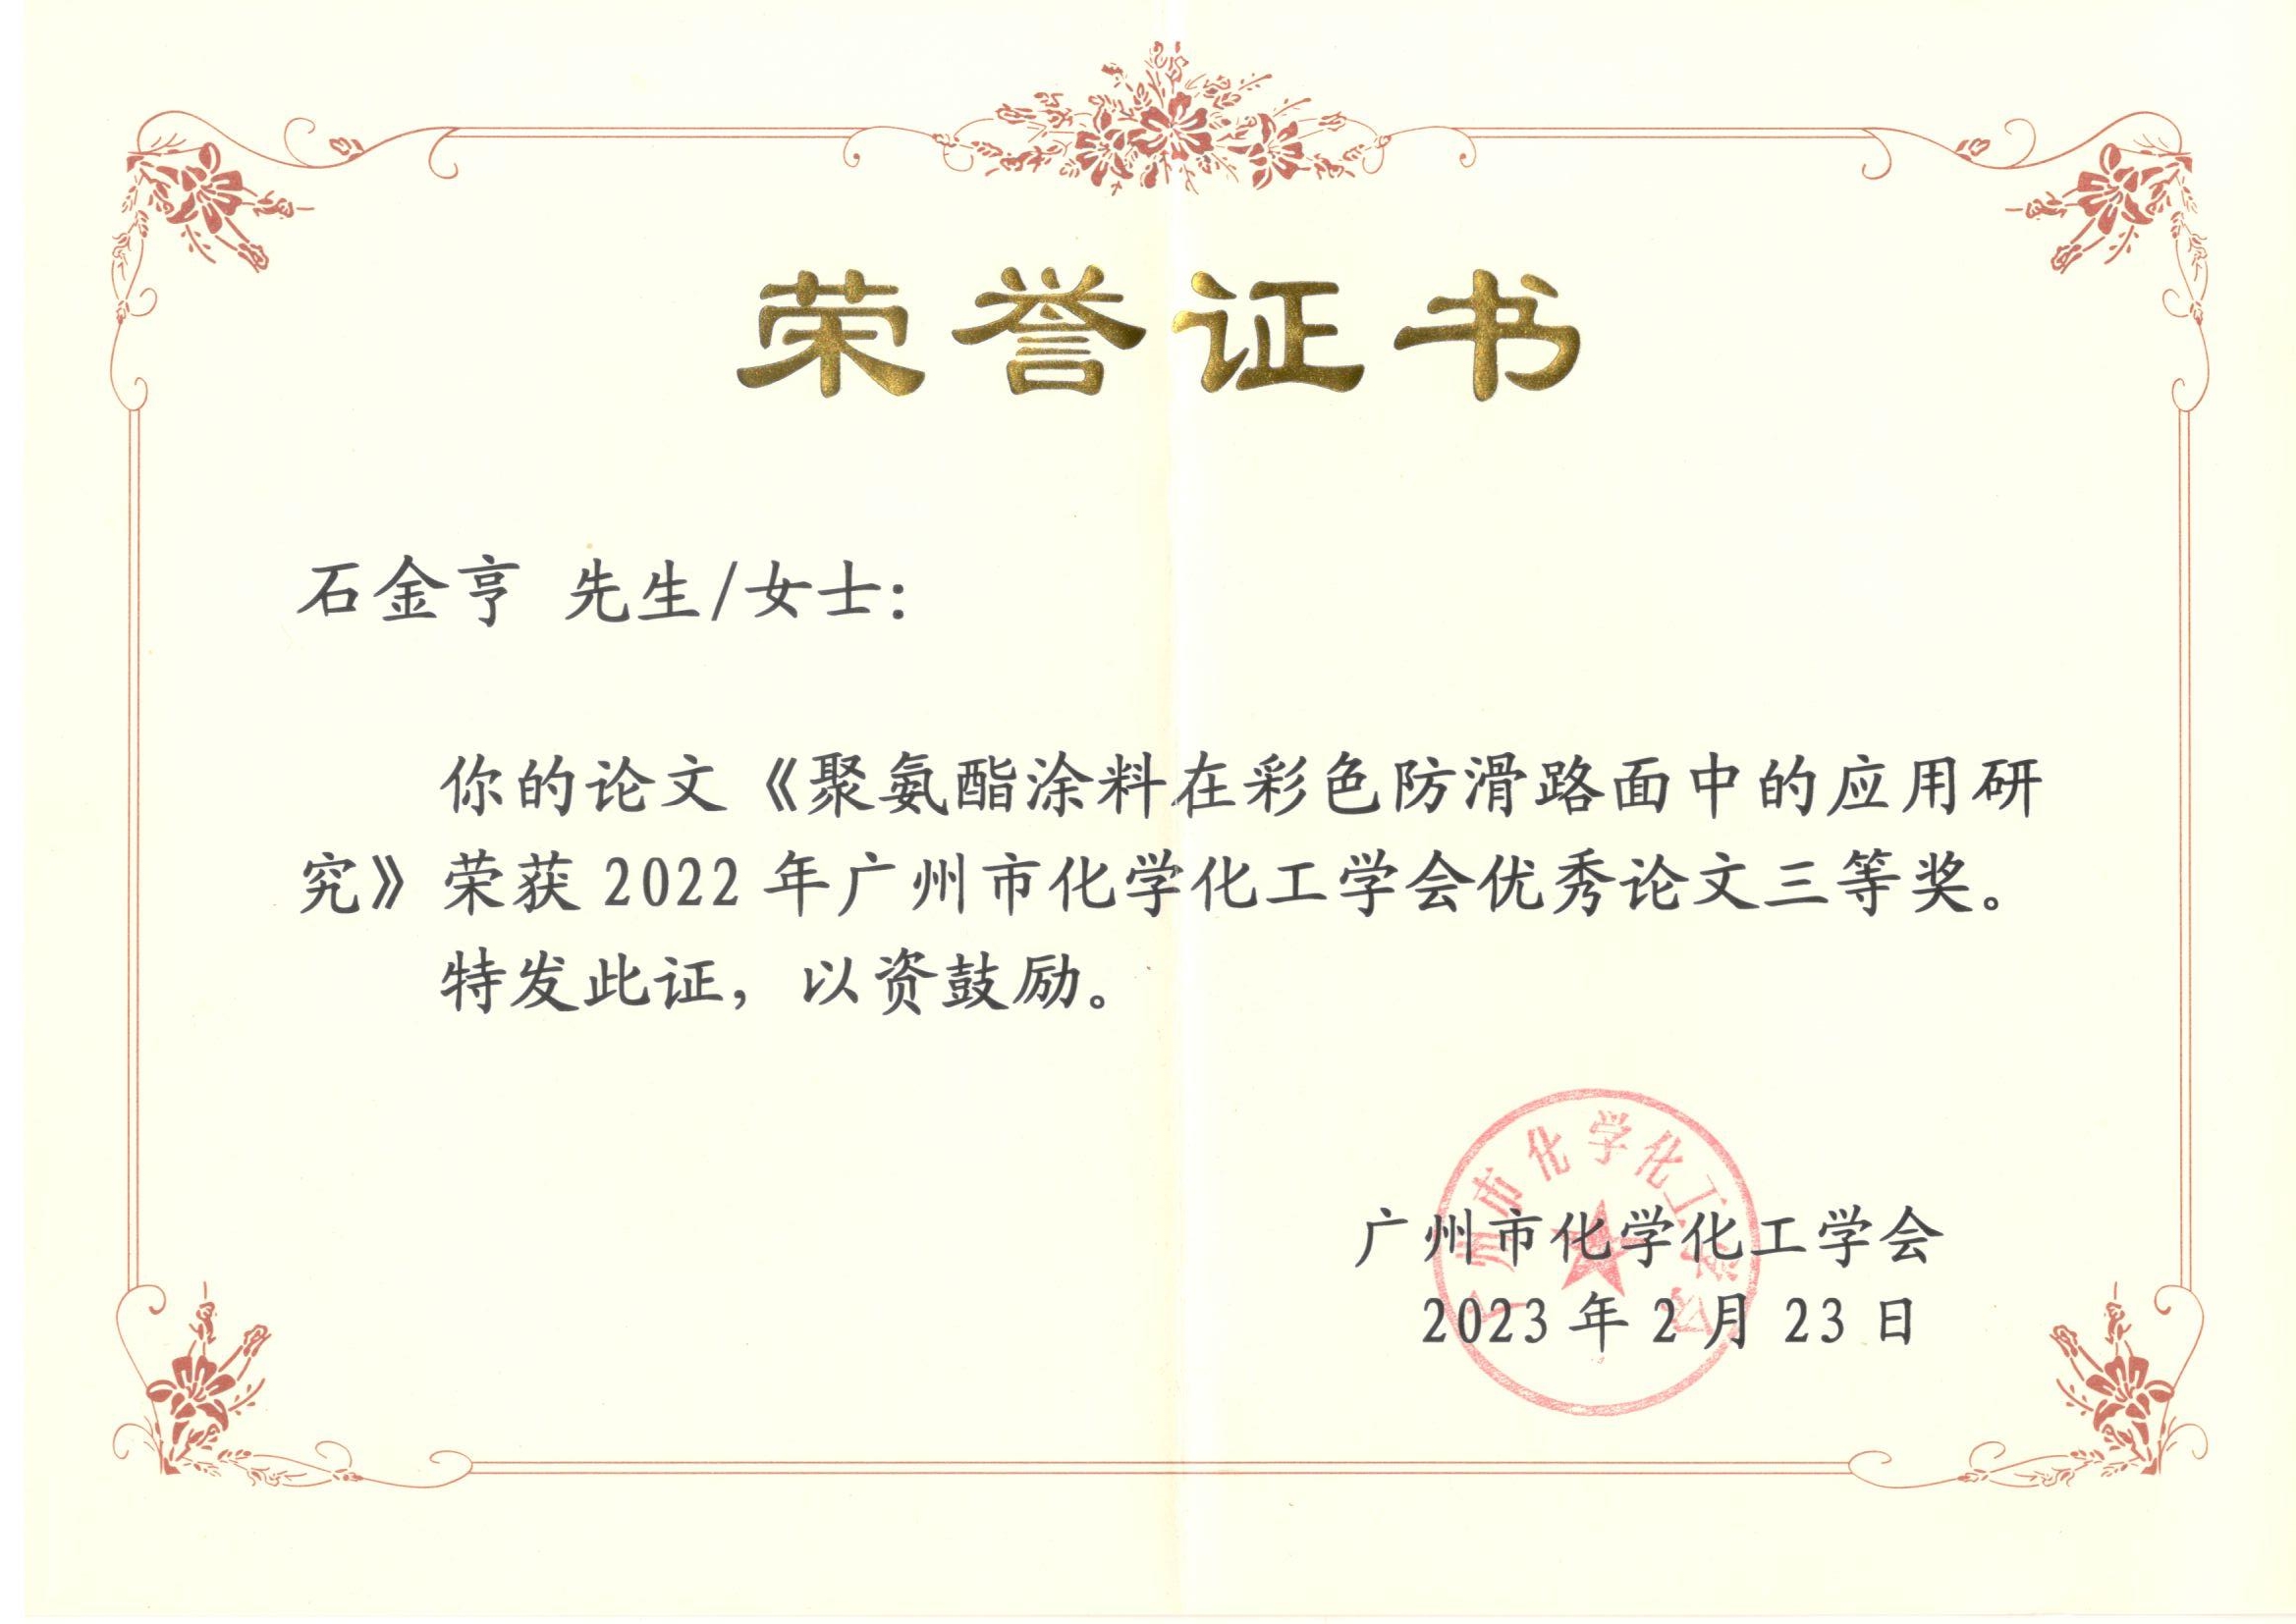 祝贺我司在2022年广州市化学化工学会论文评选中获得三等奖